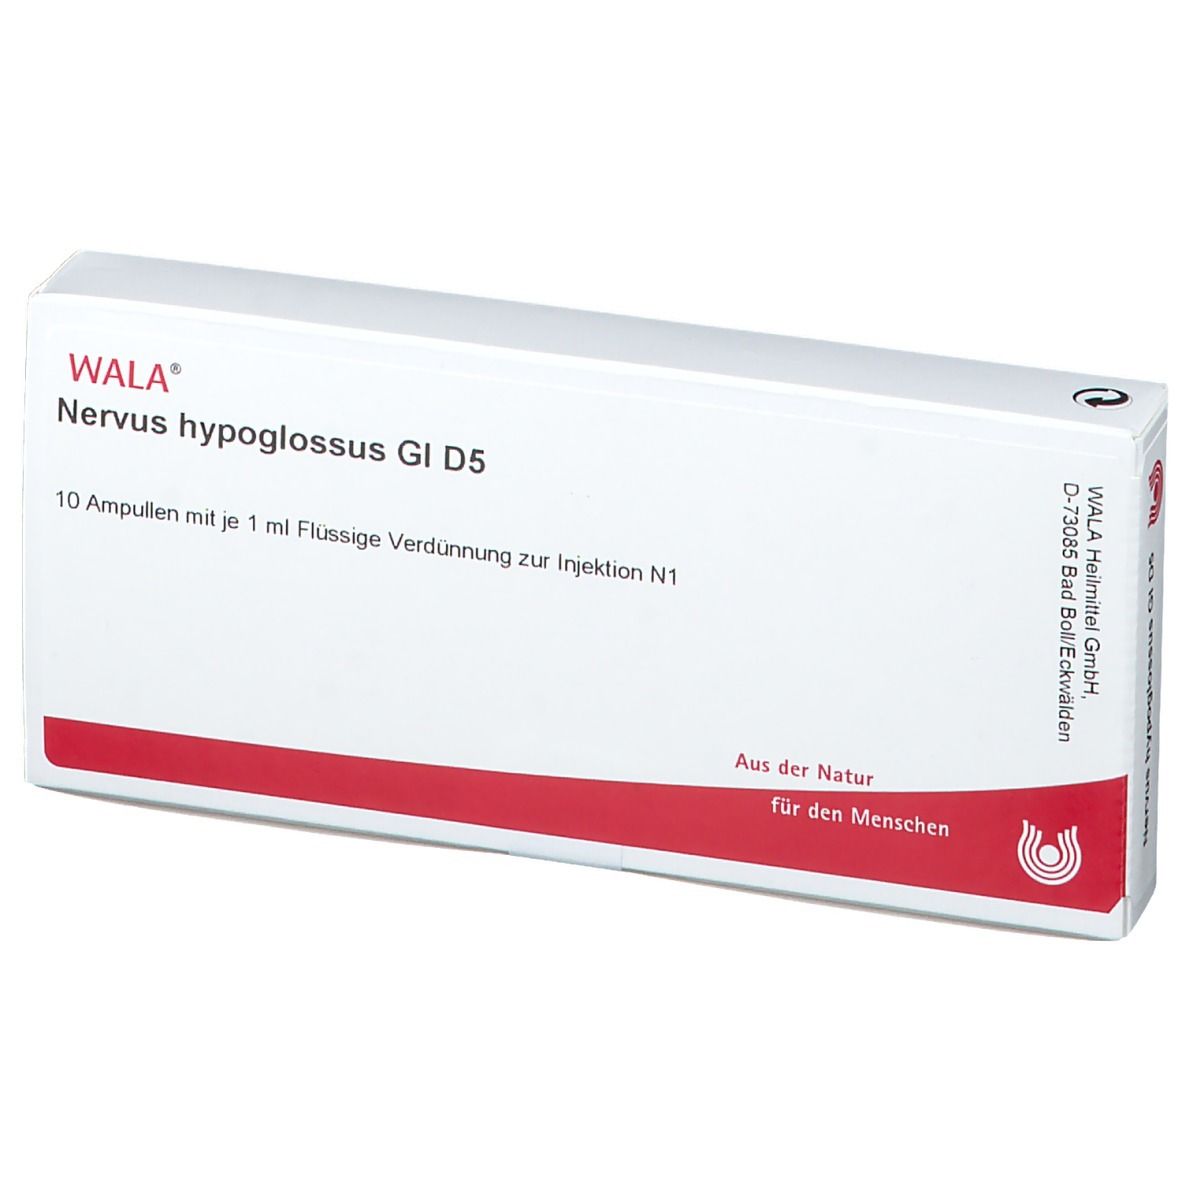 WALA® Nervus hypoglossus Gl D 5